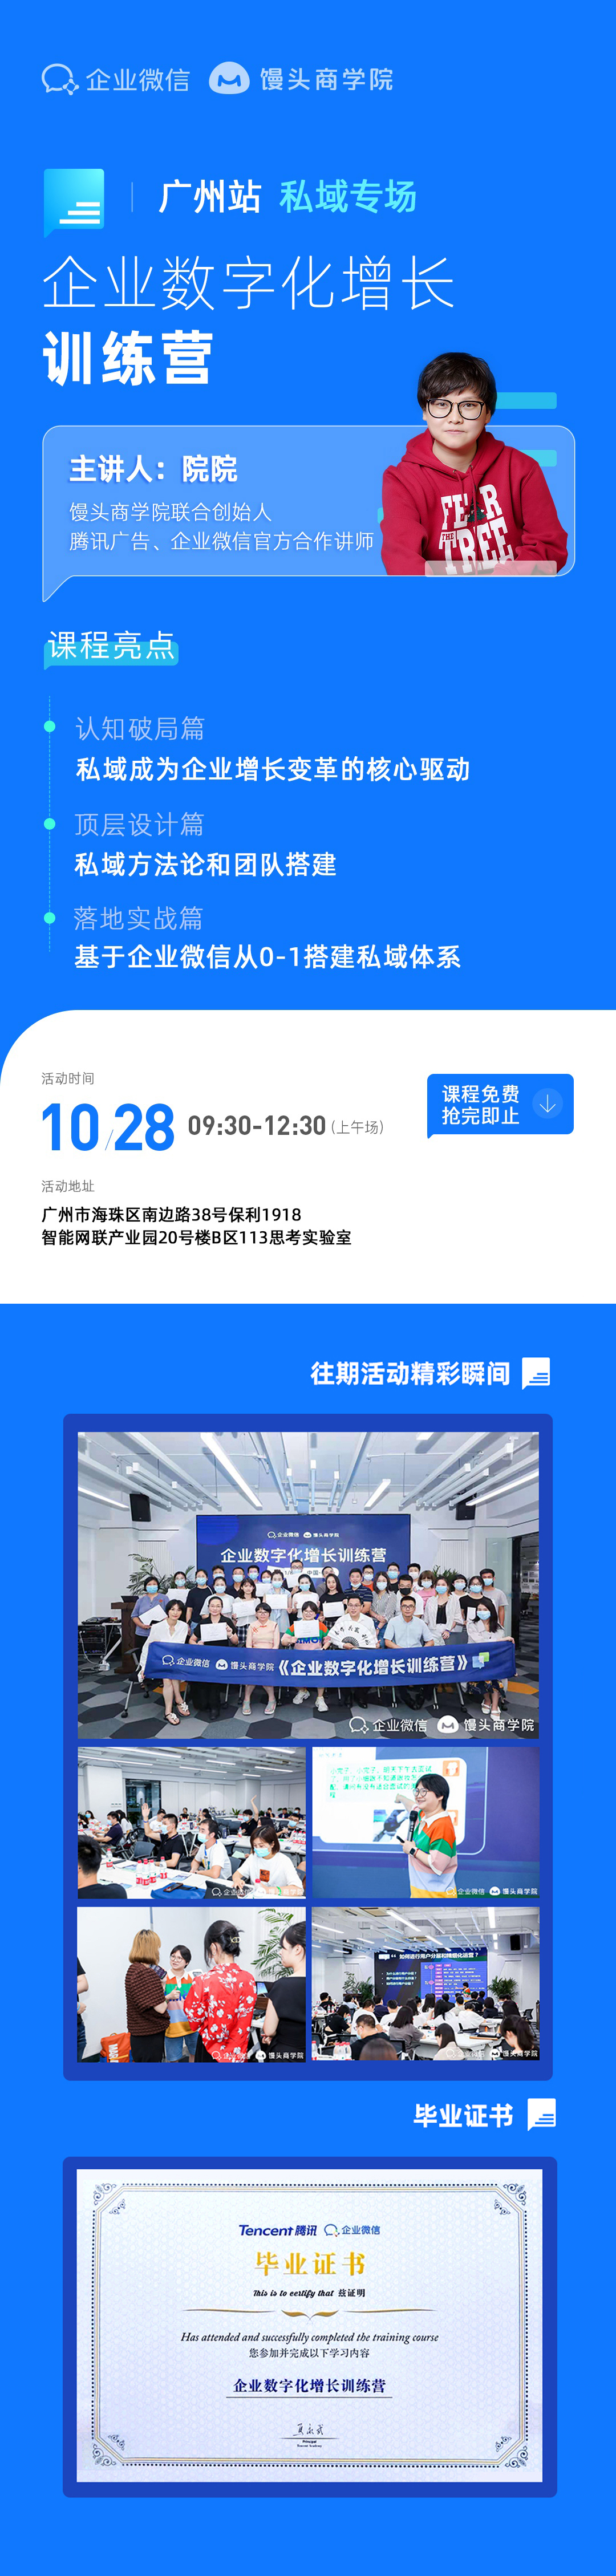 [10月28日广州]企业数字化增长训练营活动海报-活动行.jpg